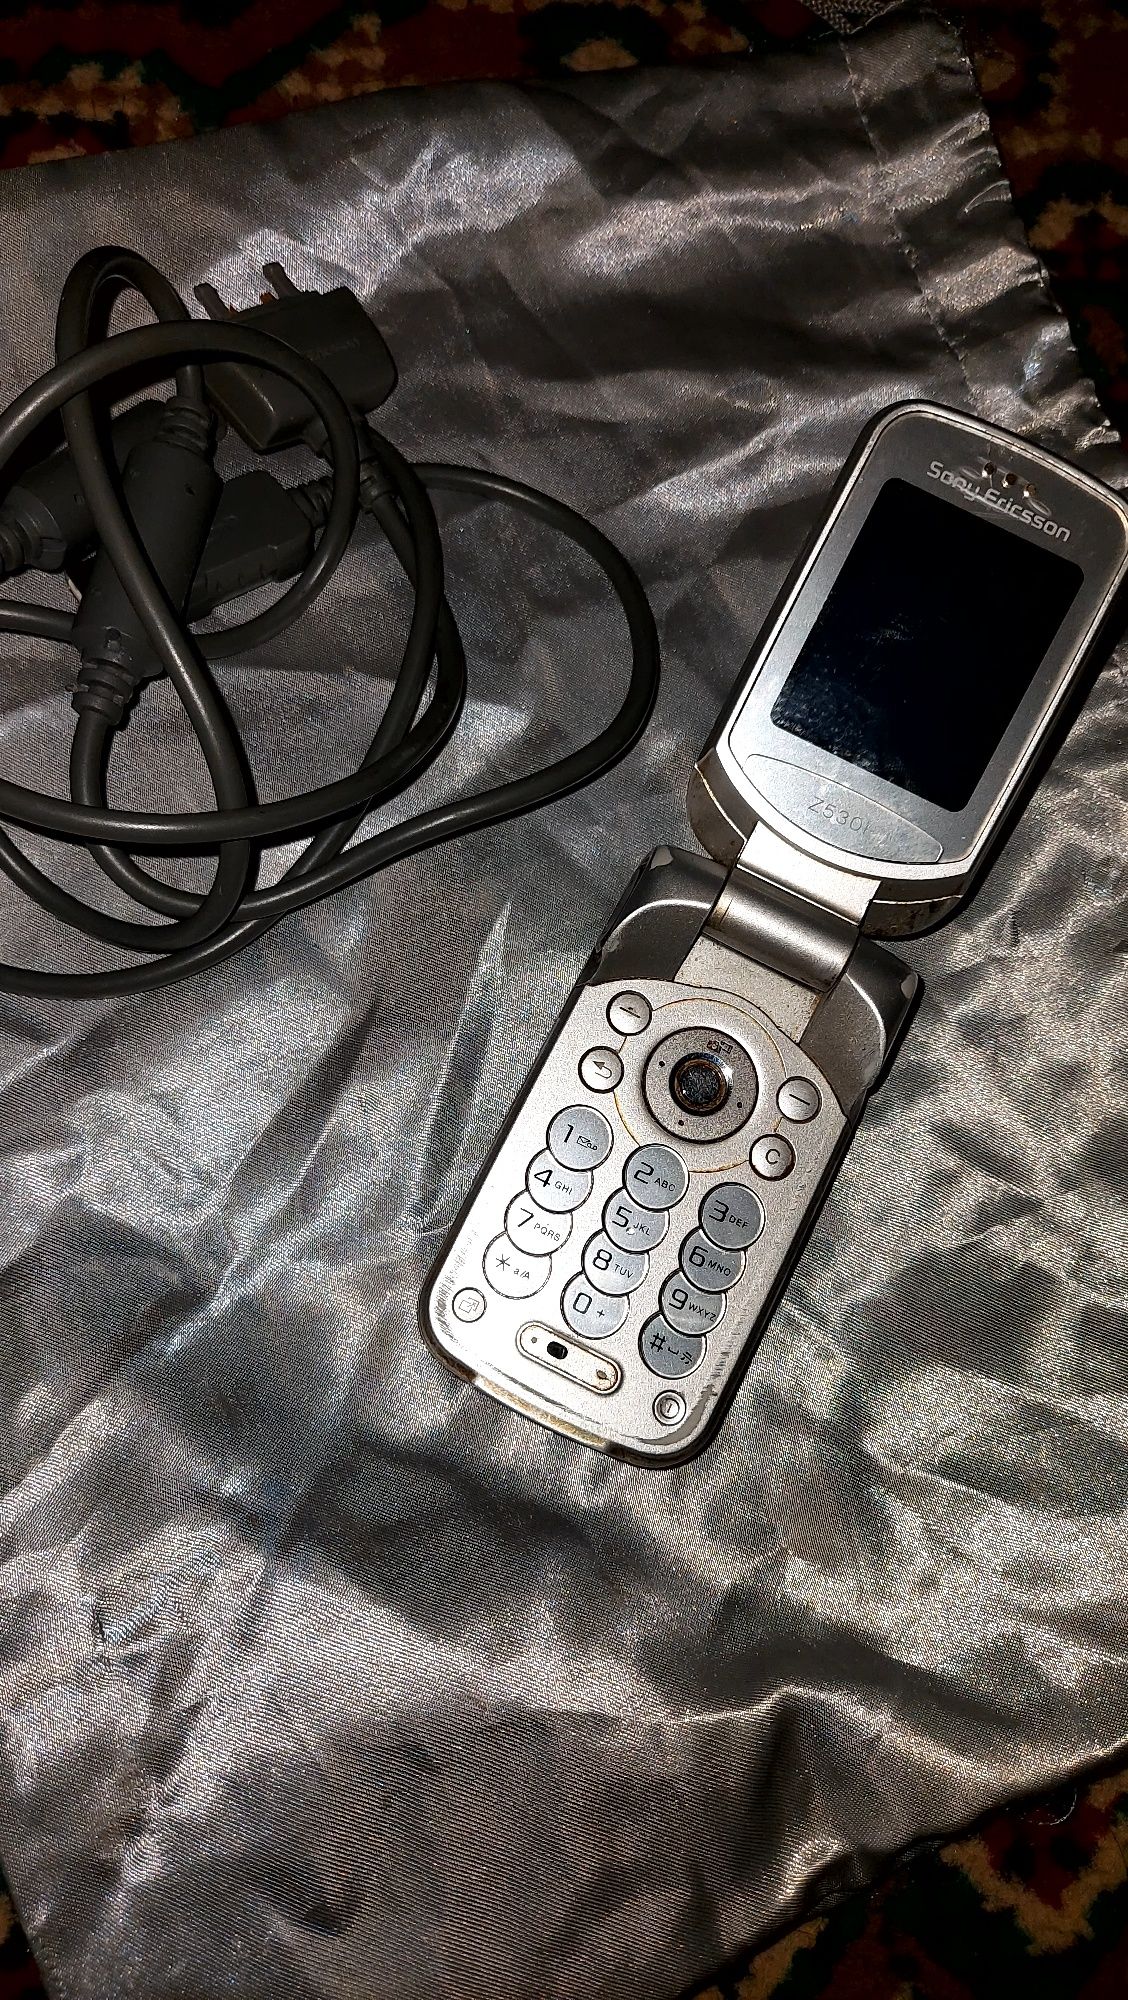 Продается телефон SONY ERICSSON

В не рабочем состоянии. Шнур от заряд